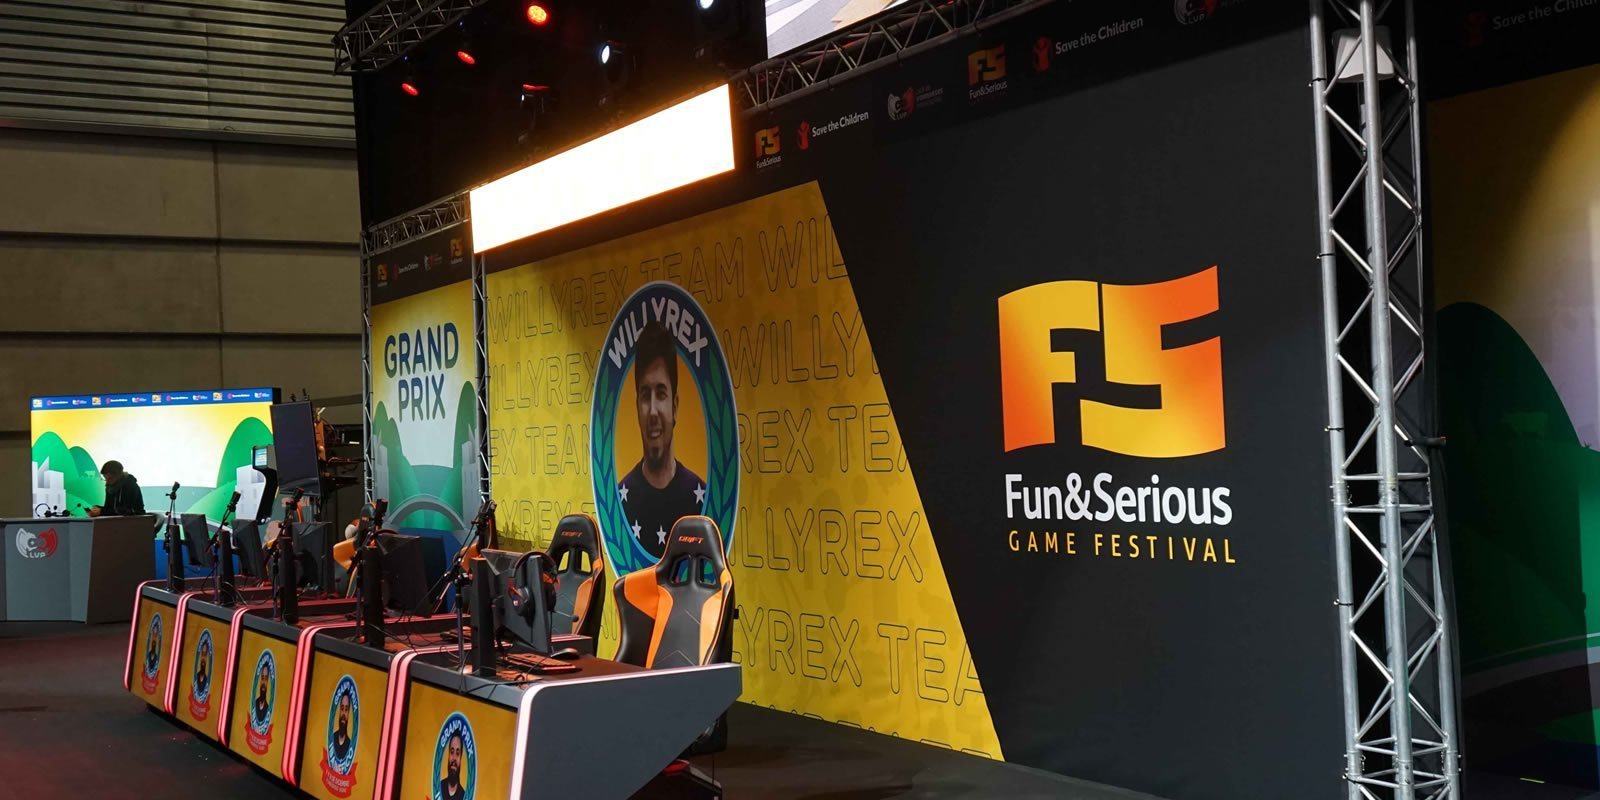 Fun & Serious Game Festival no se perderá 2020: se celebrará en diciembre